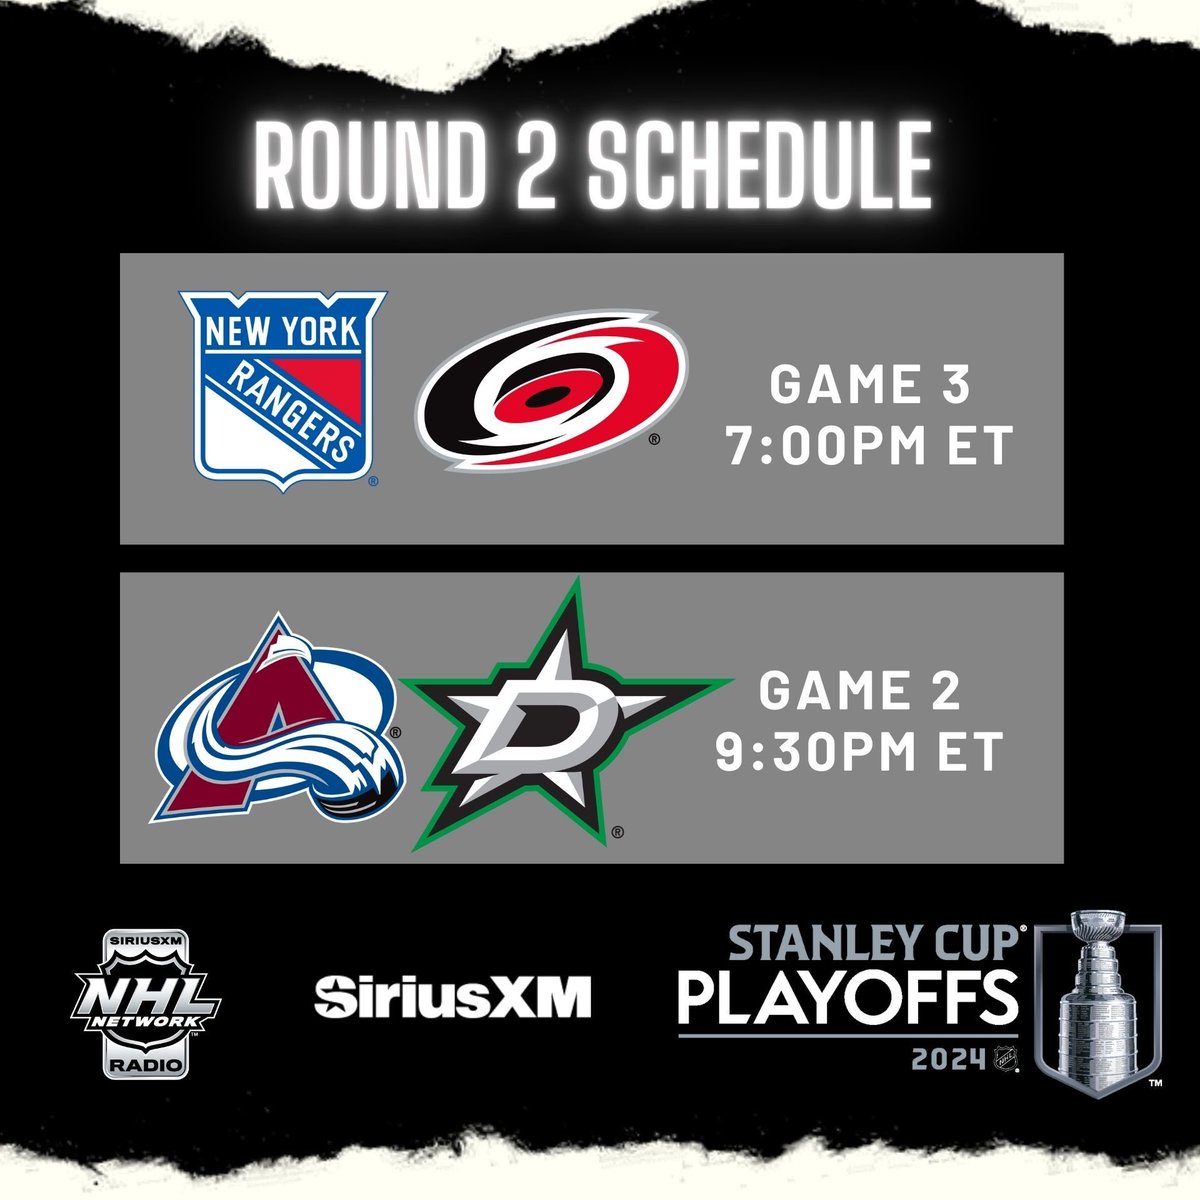 #StanleyCup Playoffs 𝐋𝐈𝐕𝐄 𝐨𝐧 @SiriusXMNHL DOUBLE-HEADER 𝐋𝐈𝐒𝐓𝐄𝐍 𝐋𝐈𝐕𝐄⬇️ SiriusXM.ca/NHLLive/